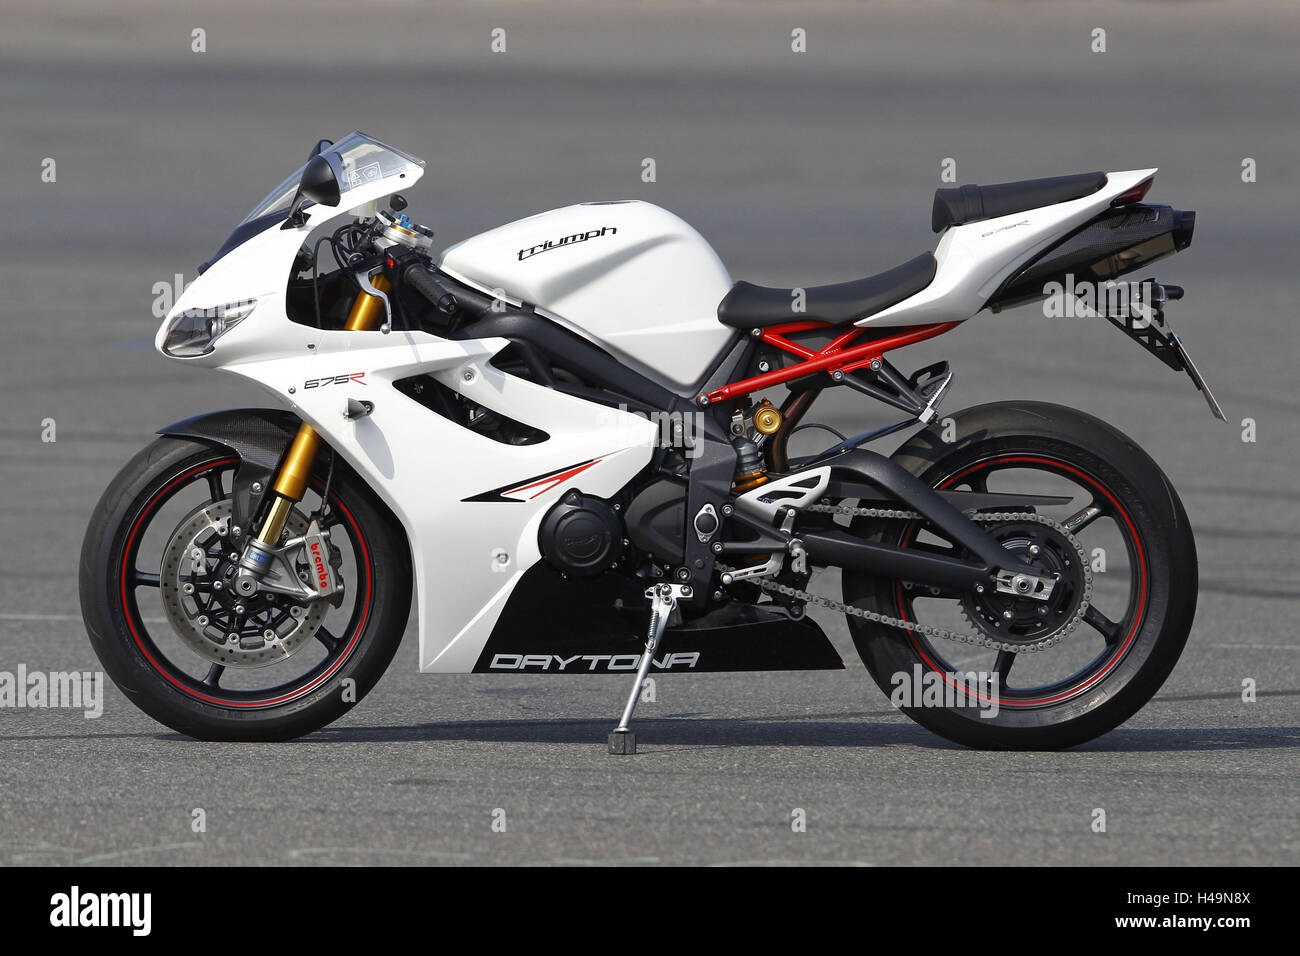 Motociclo, trionfo 675R, bianco, lato sinistro, in piedi, moto sportive, Foto Stock